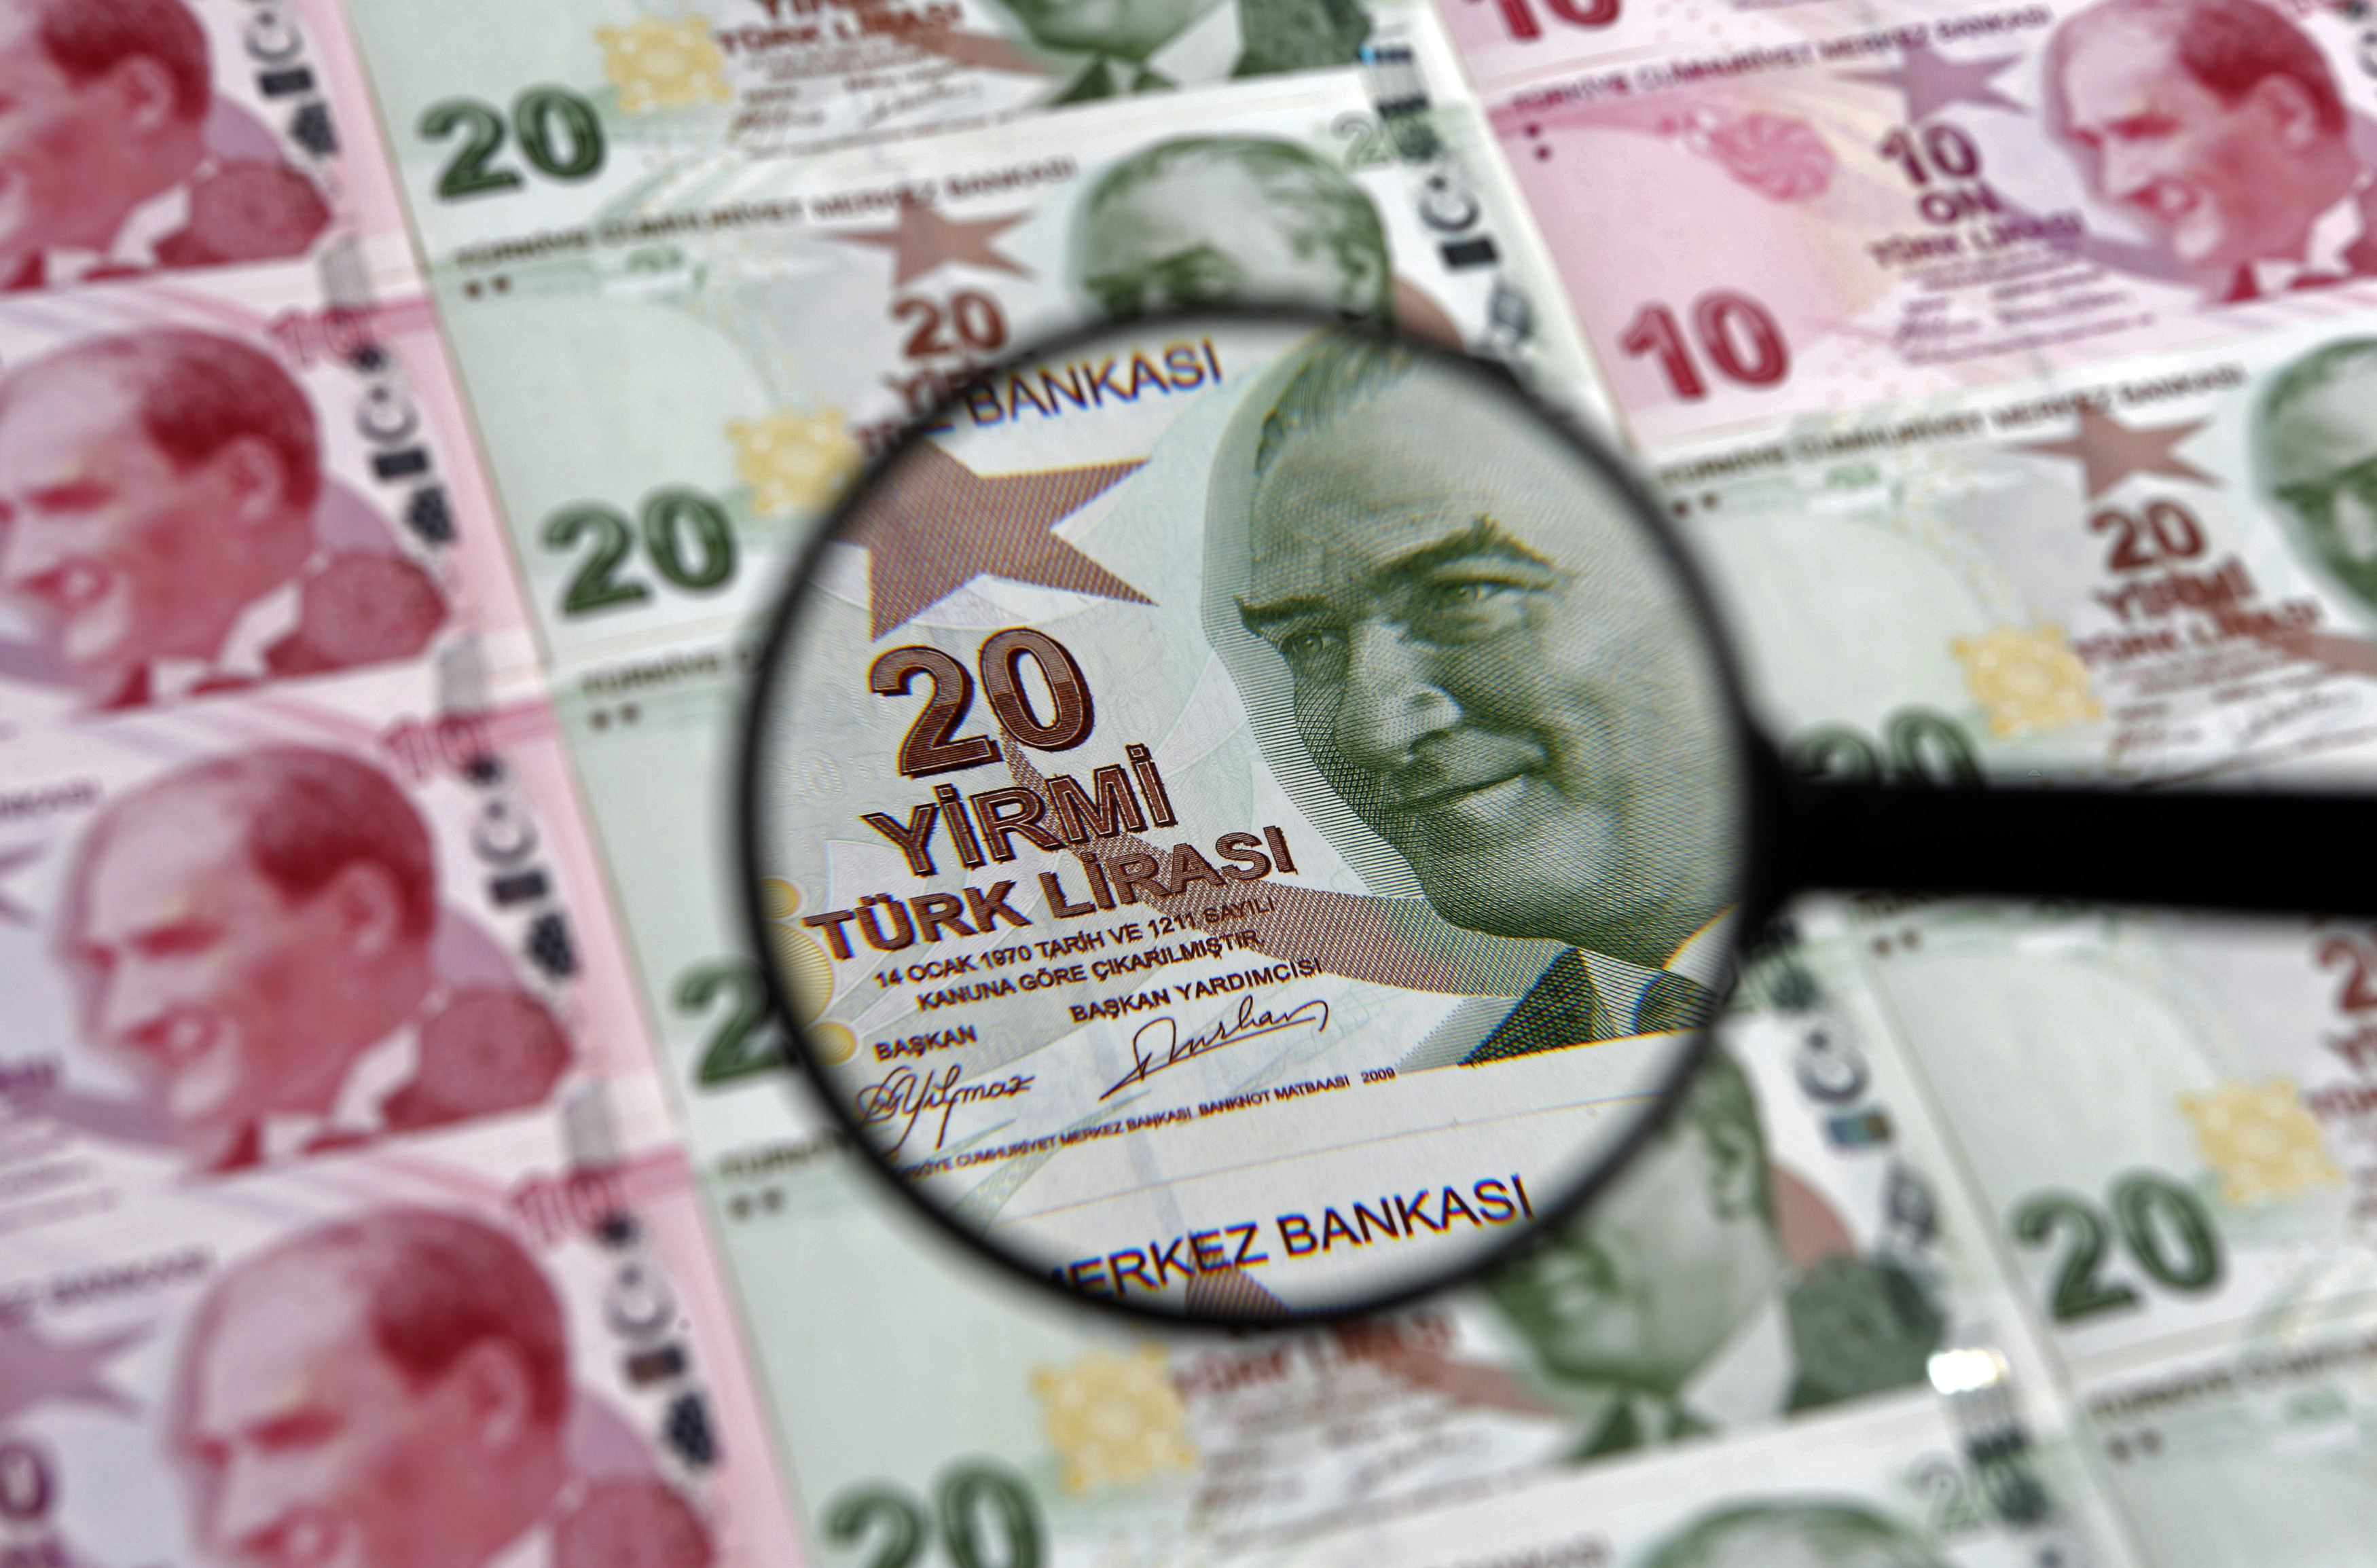 Σε νέα μείωση των επιτοκίων προχώρησε η κεντρική τράπεζα της Τουρκίας